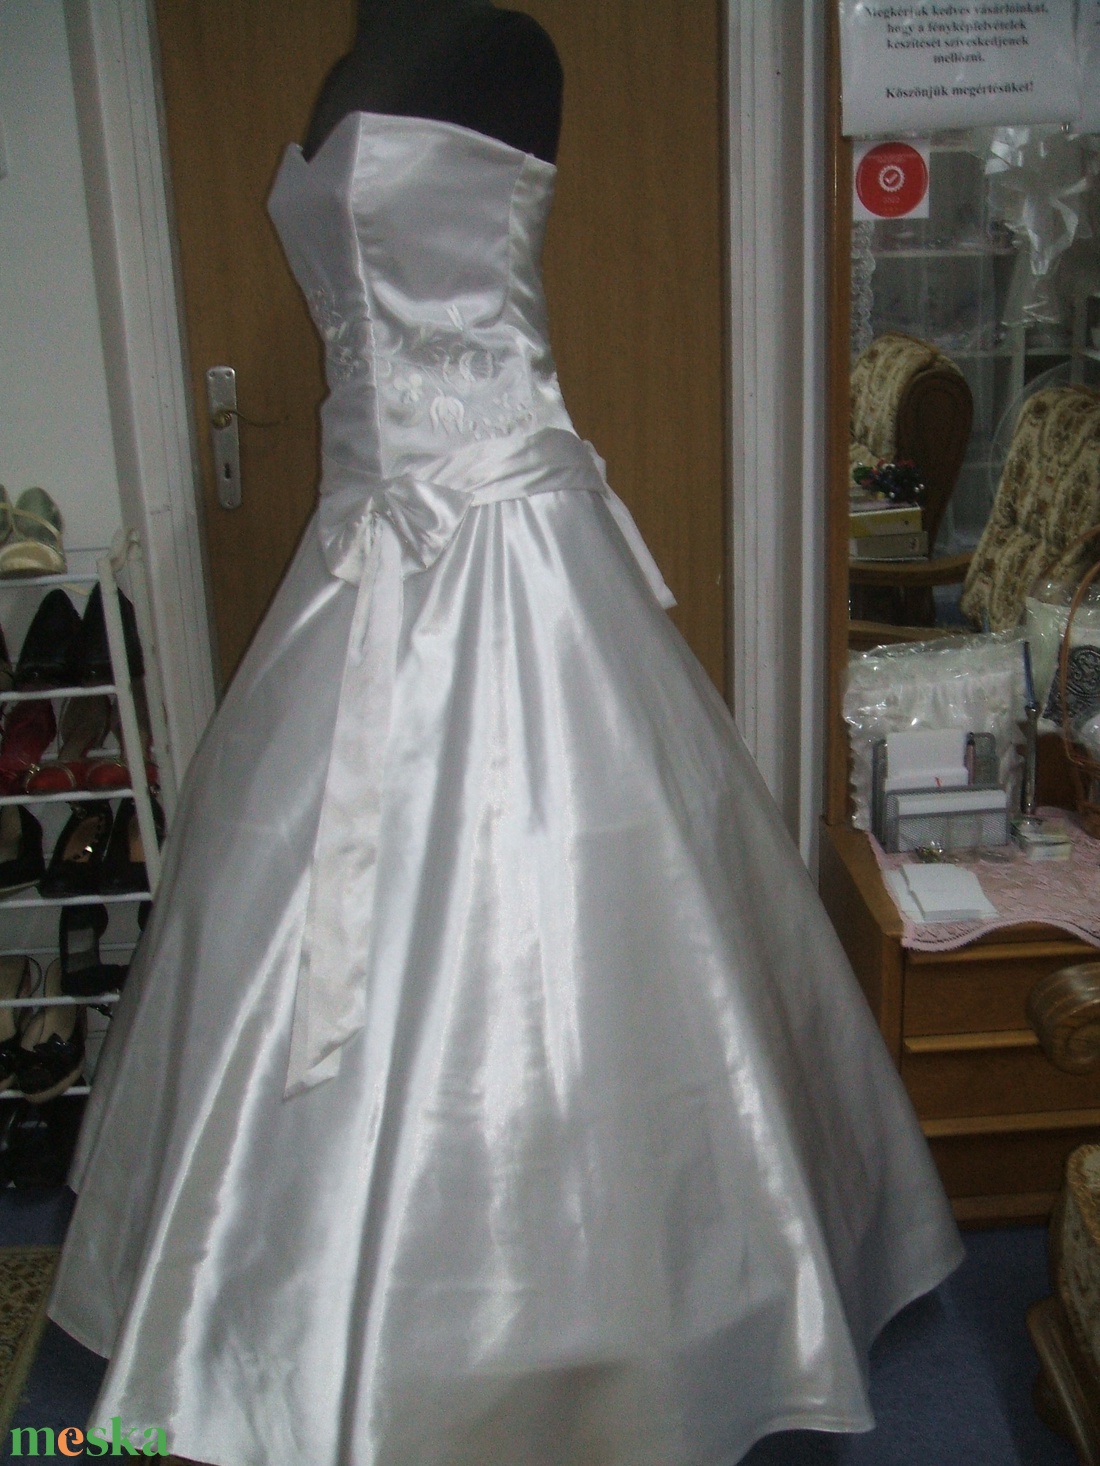 Menyasszonyi ruha, kalocsai fehér himzéssel, 38-40 - esküvő - ruha - menyasszonyi ruha - Meska.hu